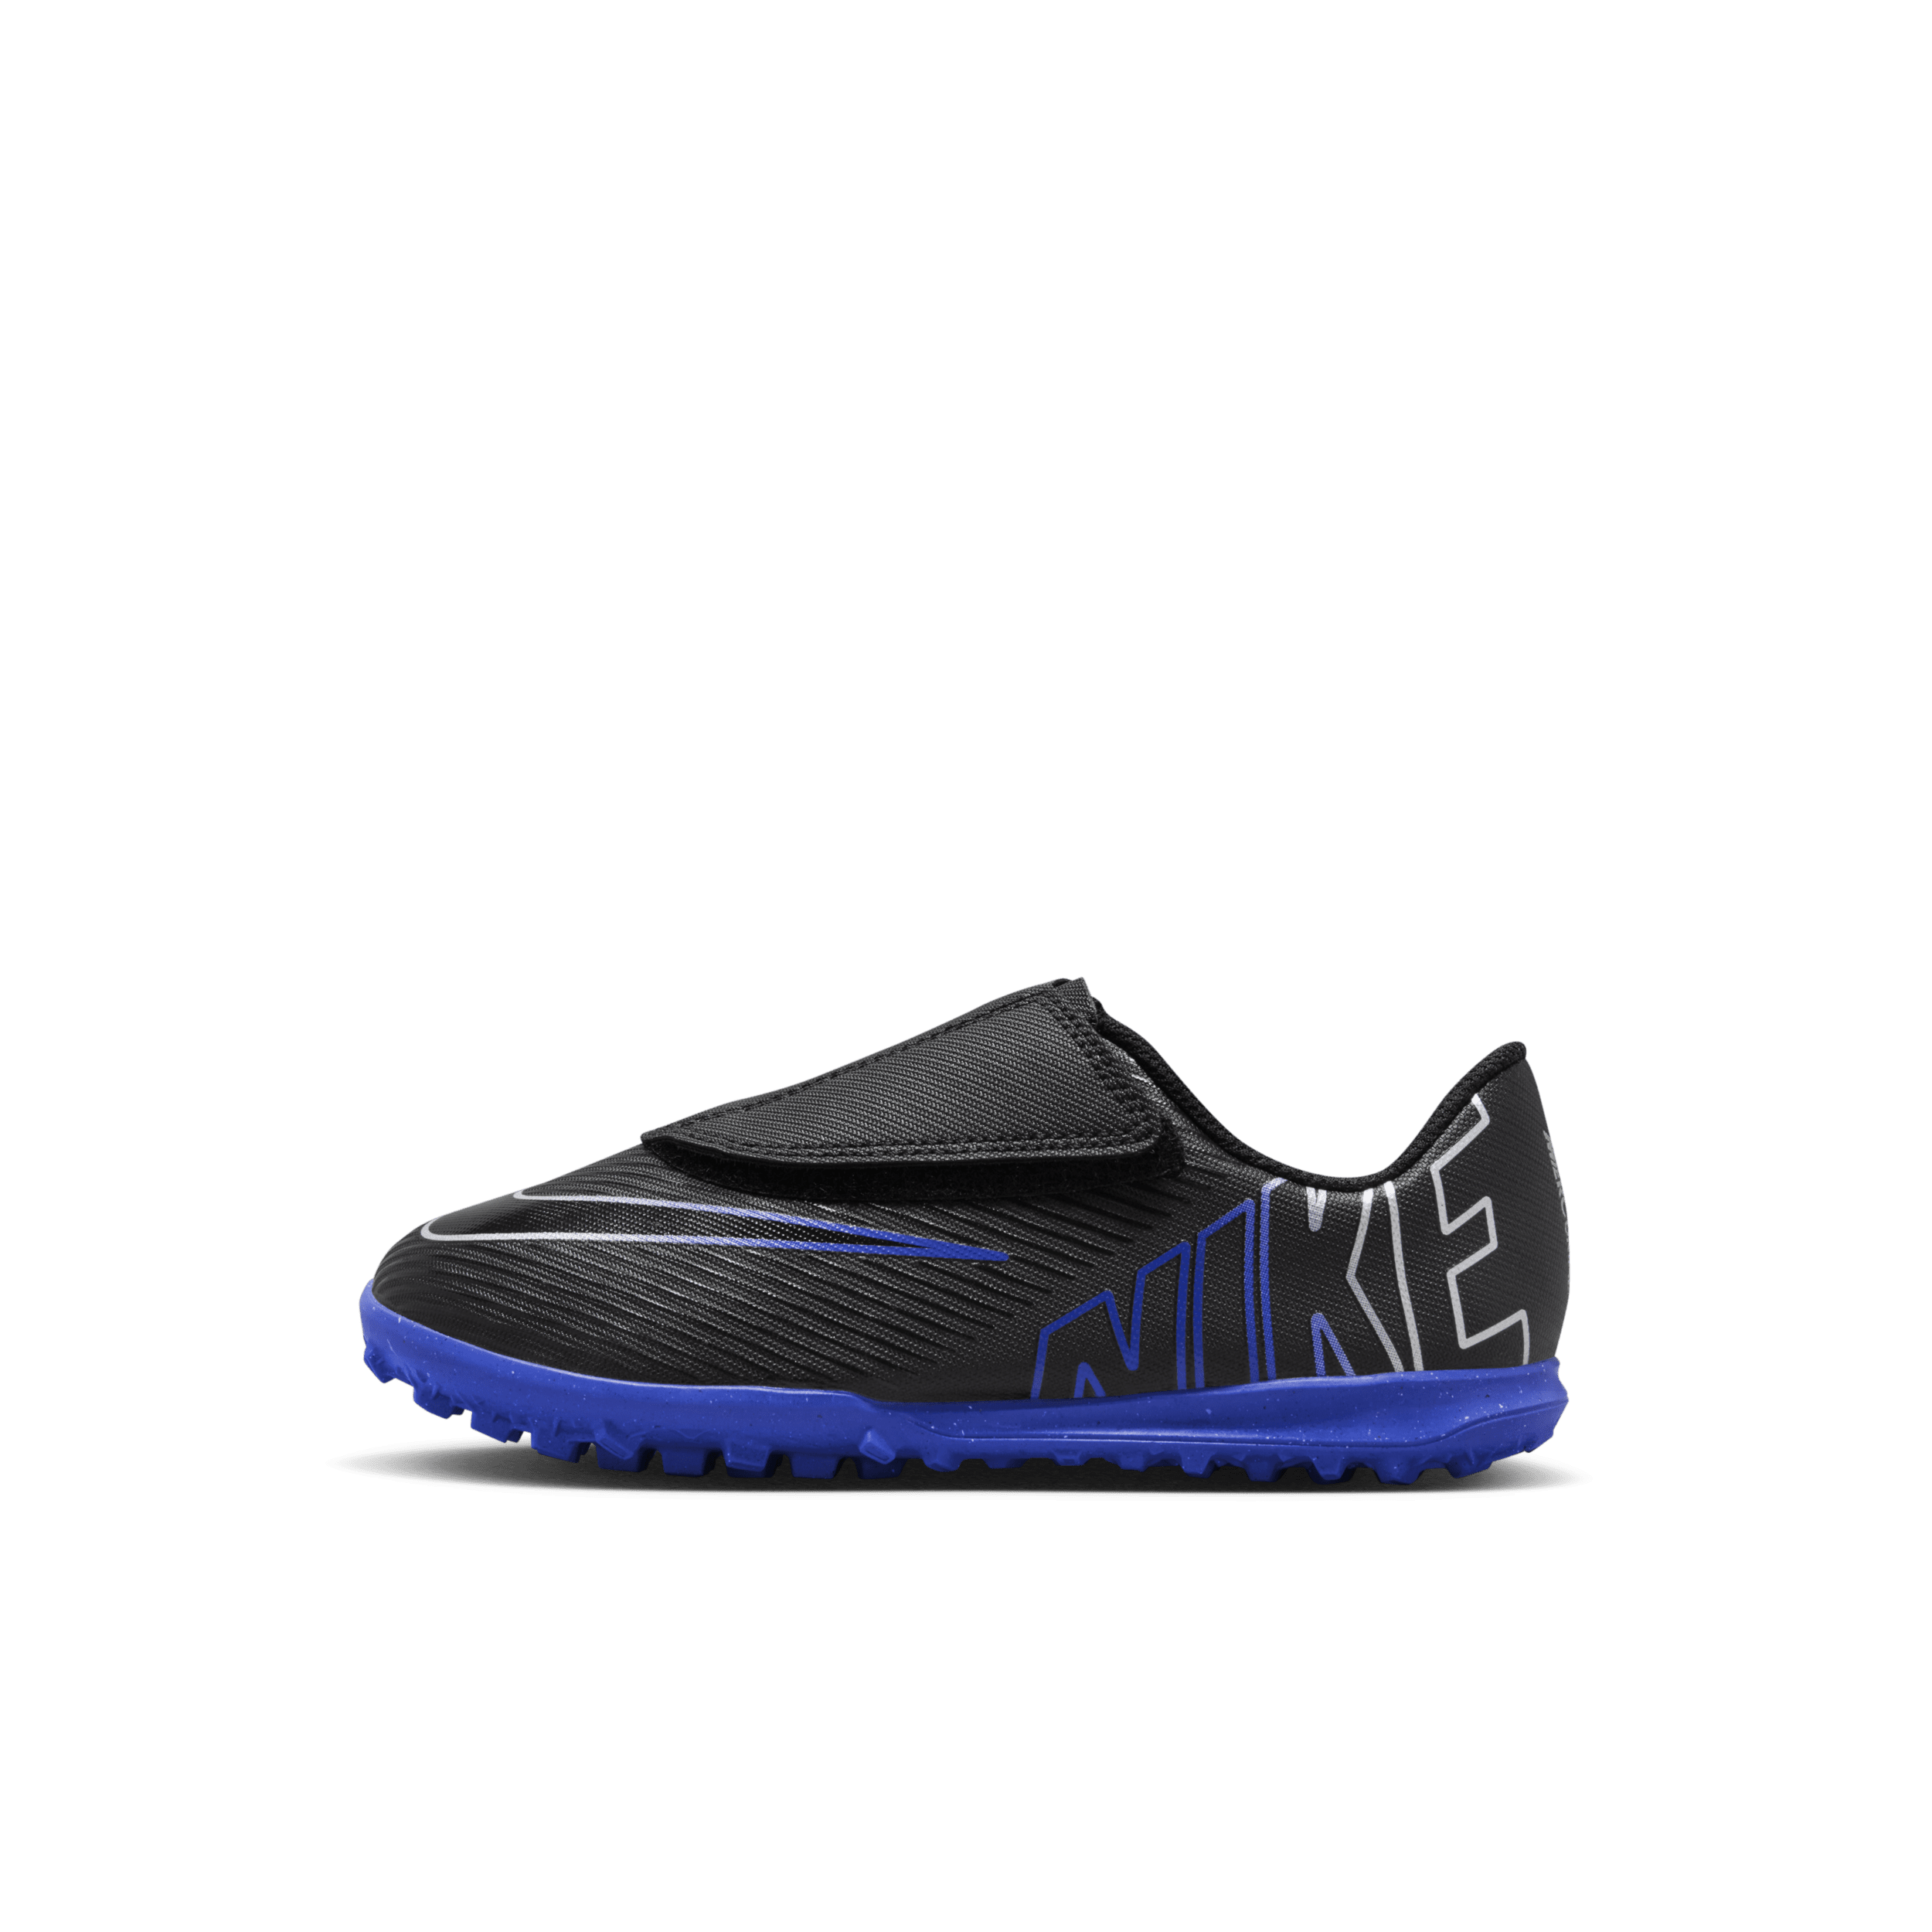 Scarpa da calcio a taglio basso per erba sintetica Nike Jr. Mercurial Vapor 15 Club – Bambino/a - Nero